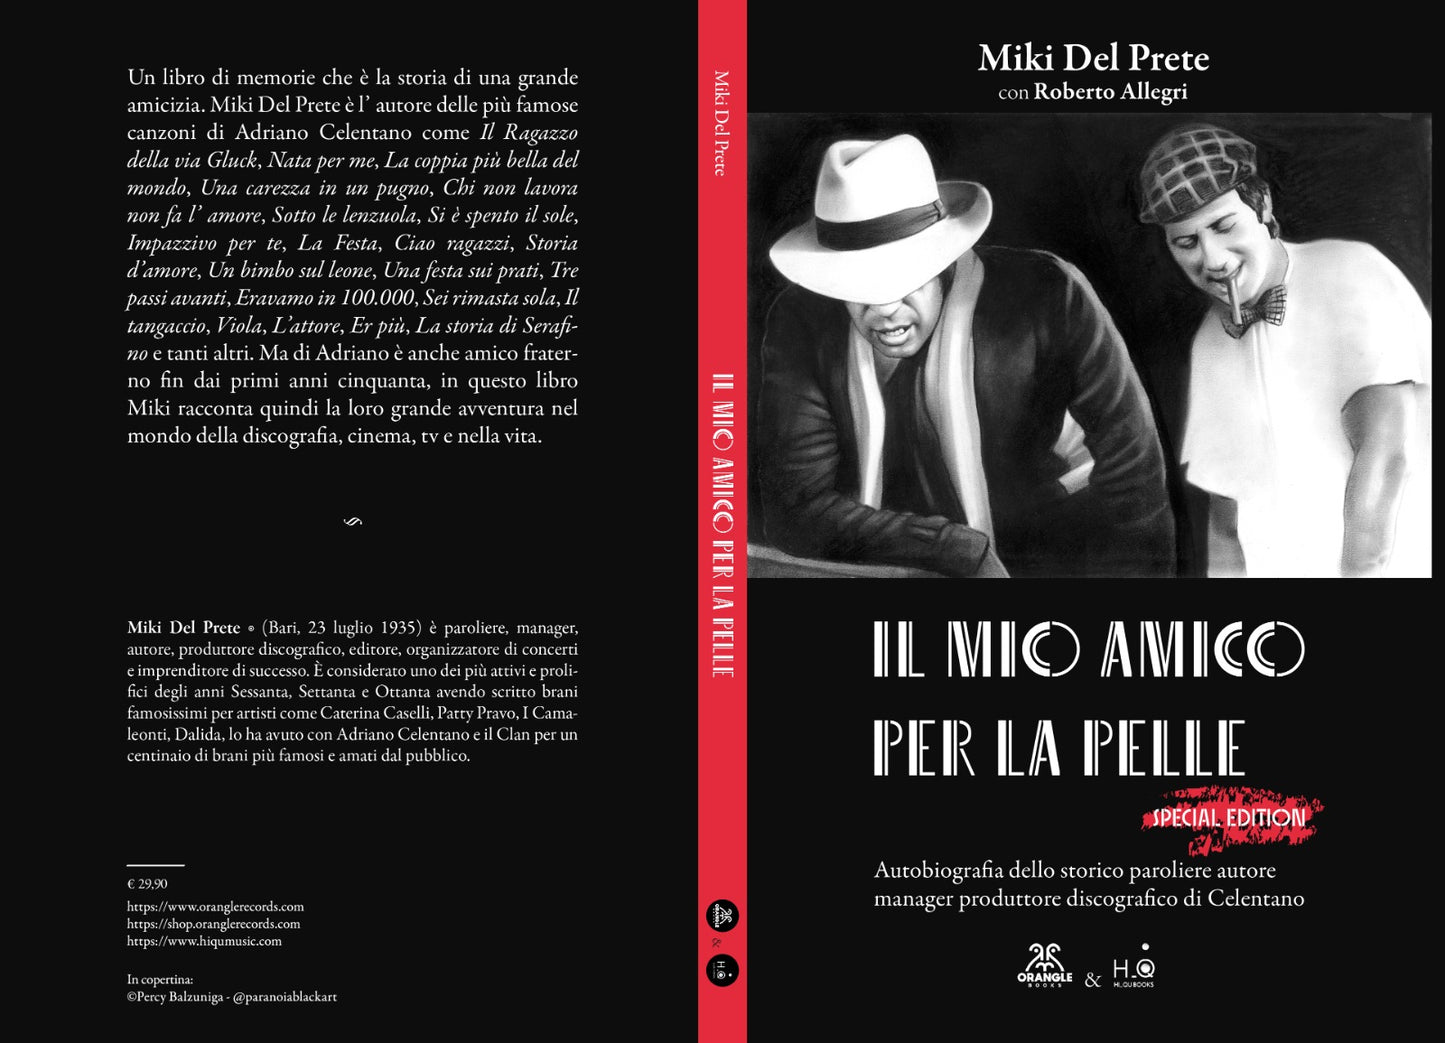 IL MIO AMICO PER LA PELLE Special Edition